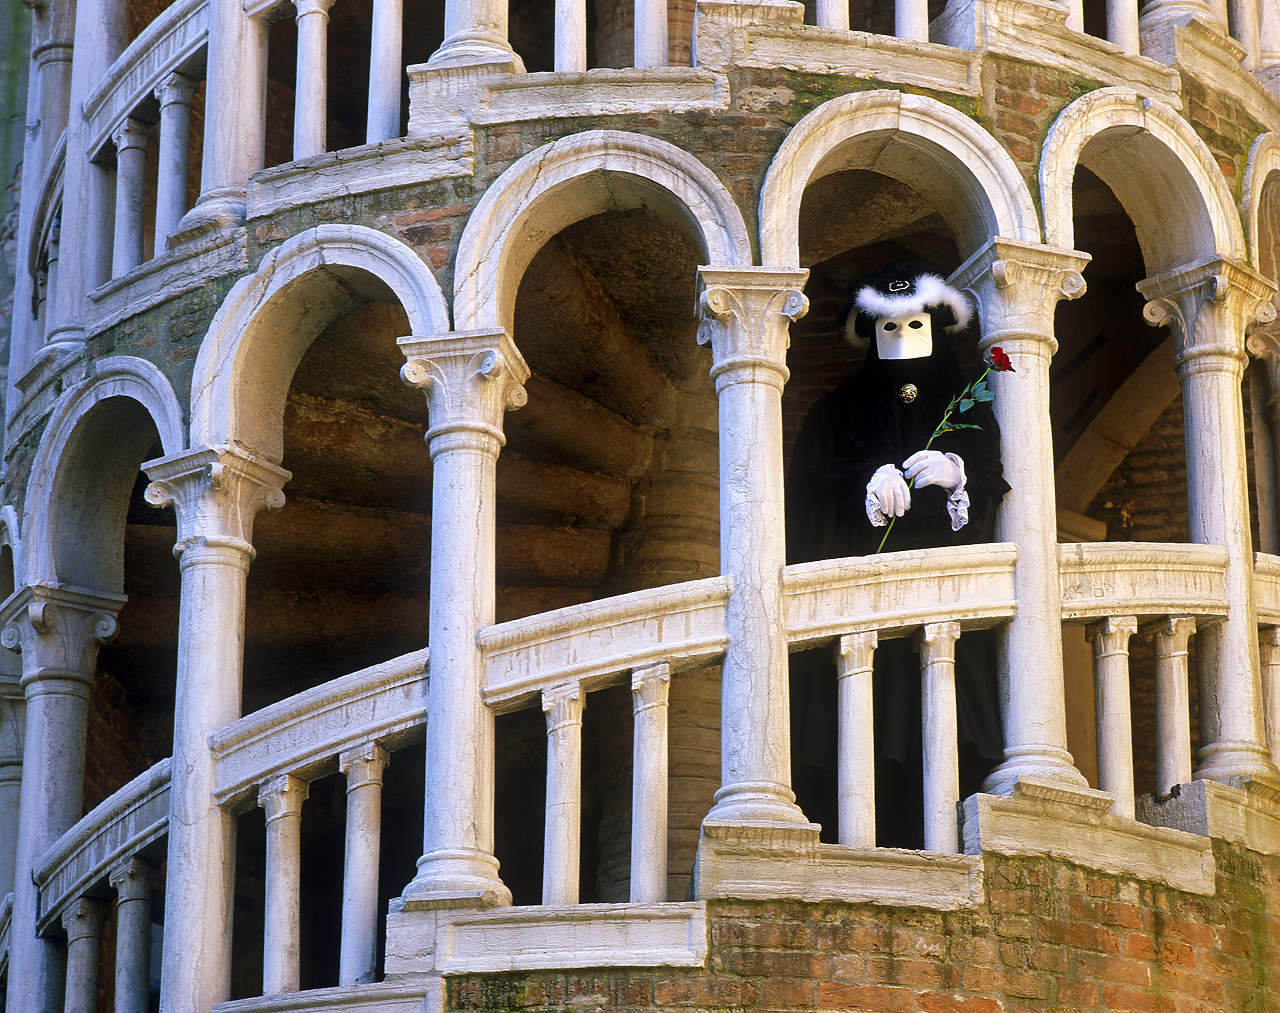 #010142-1 - Venice Carnivale Mask on Spiral Staircase of the Palazzo Contarini del Bovolo, Venice, Italy